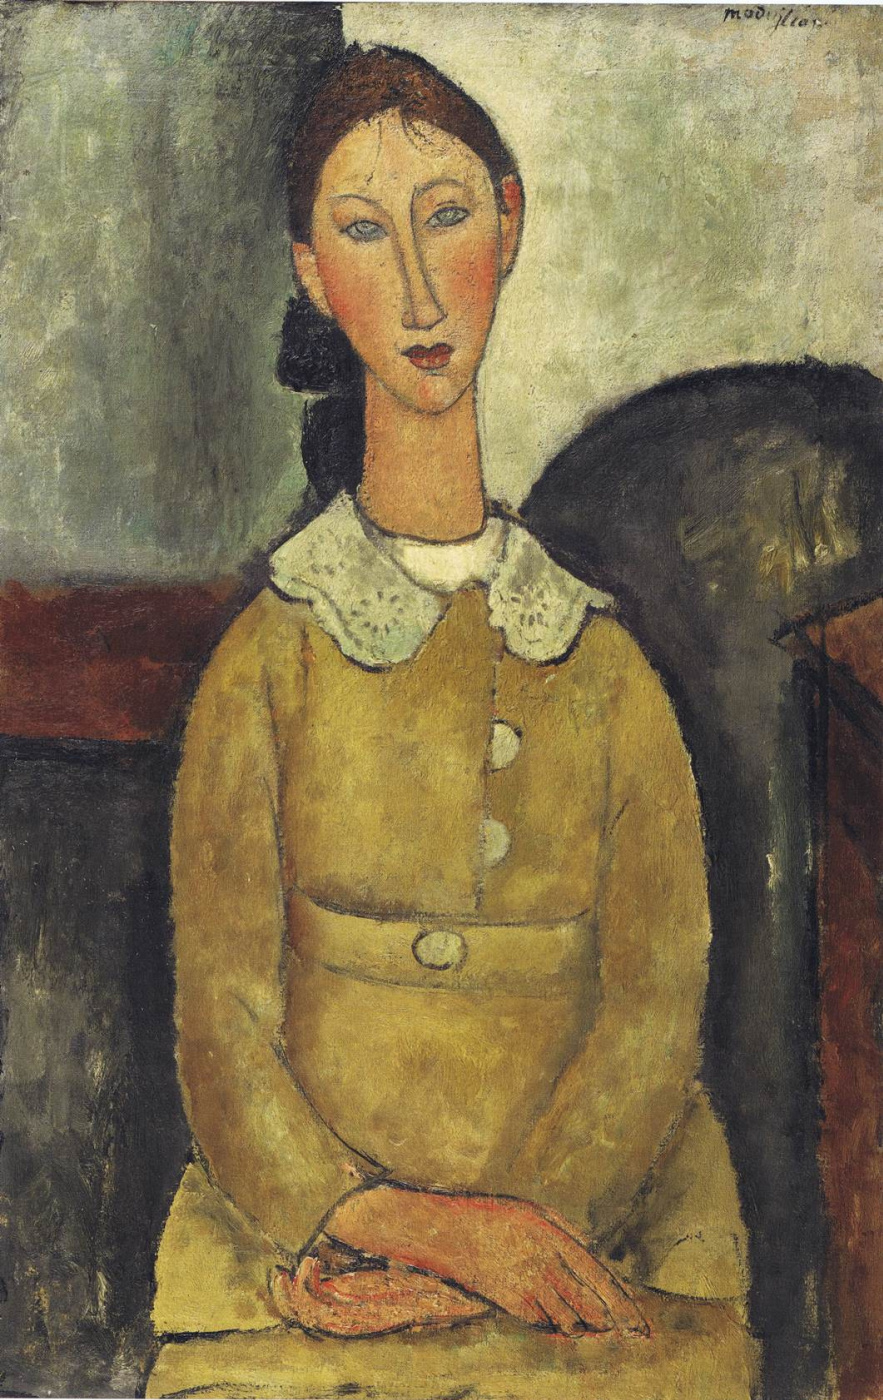 Amedeo Modigliani. The girl in the yellow dress